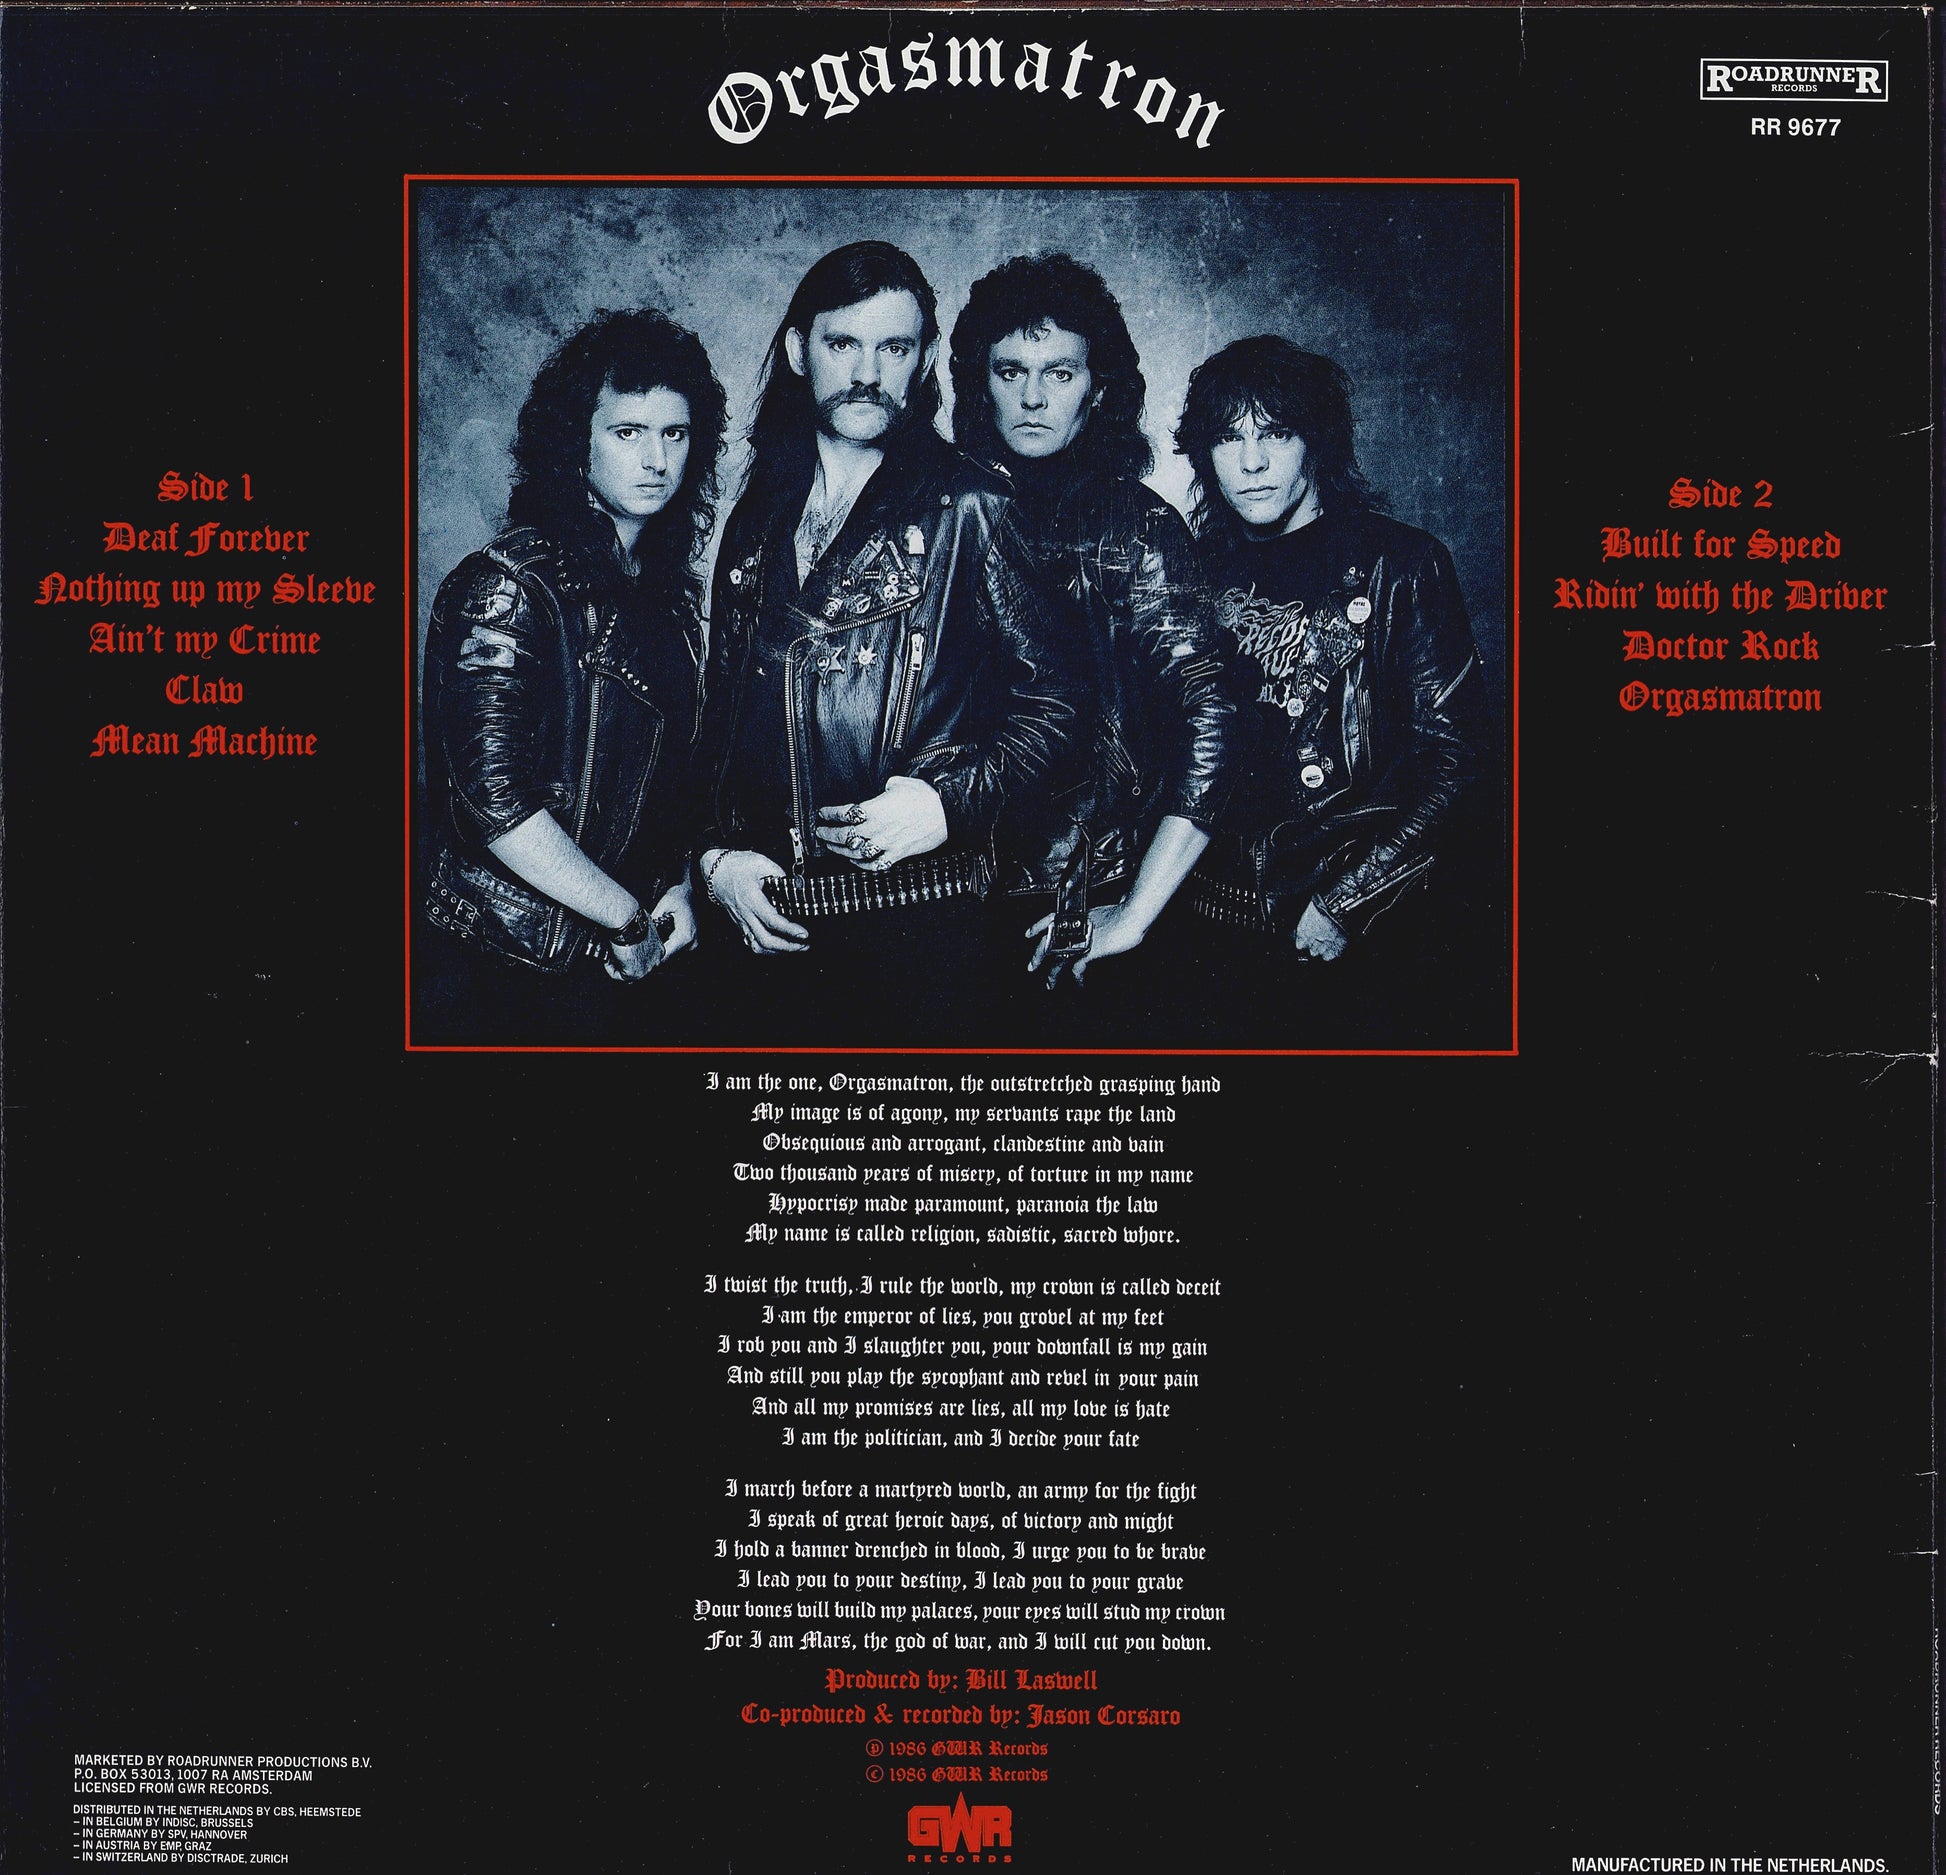 Motörhead ‎- Orgasmatron Vinyl LP